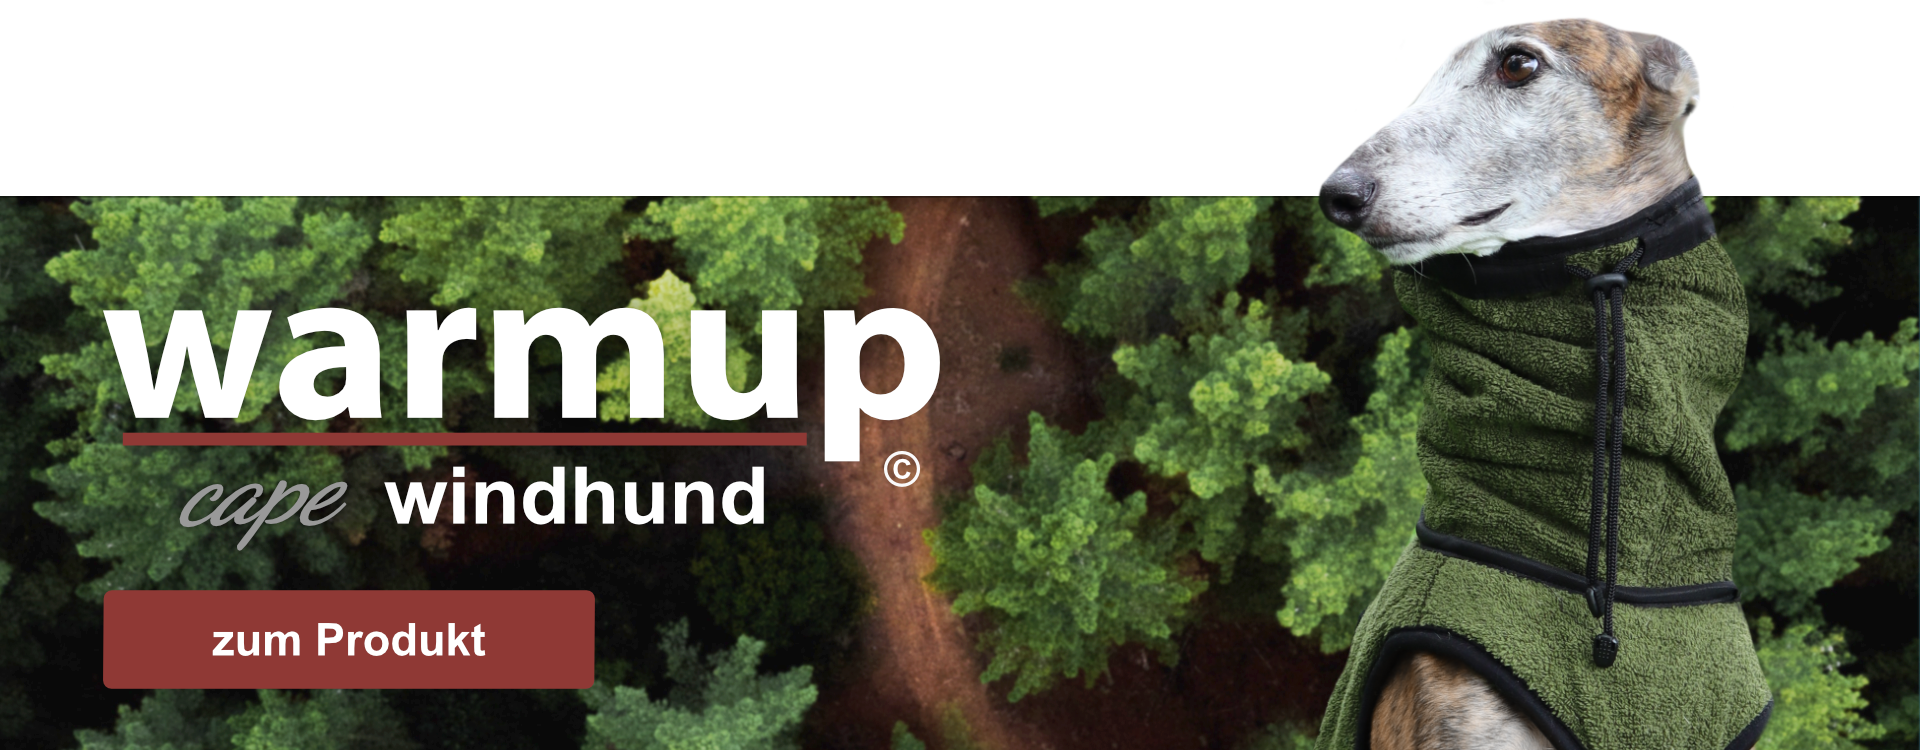 info-banner-warmup windhund